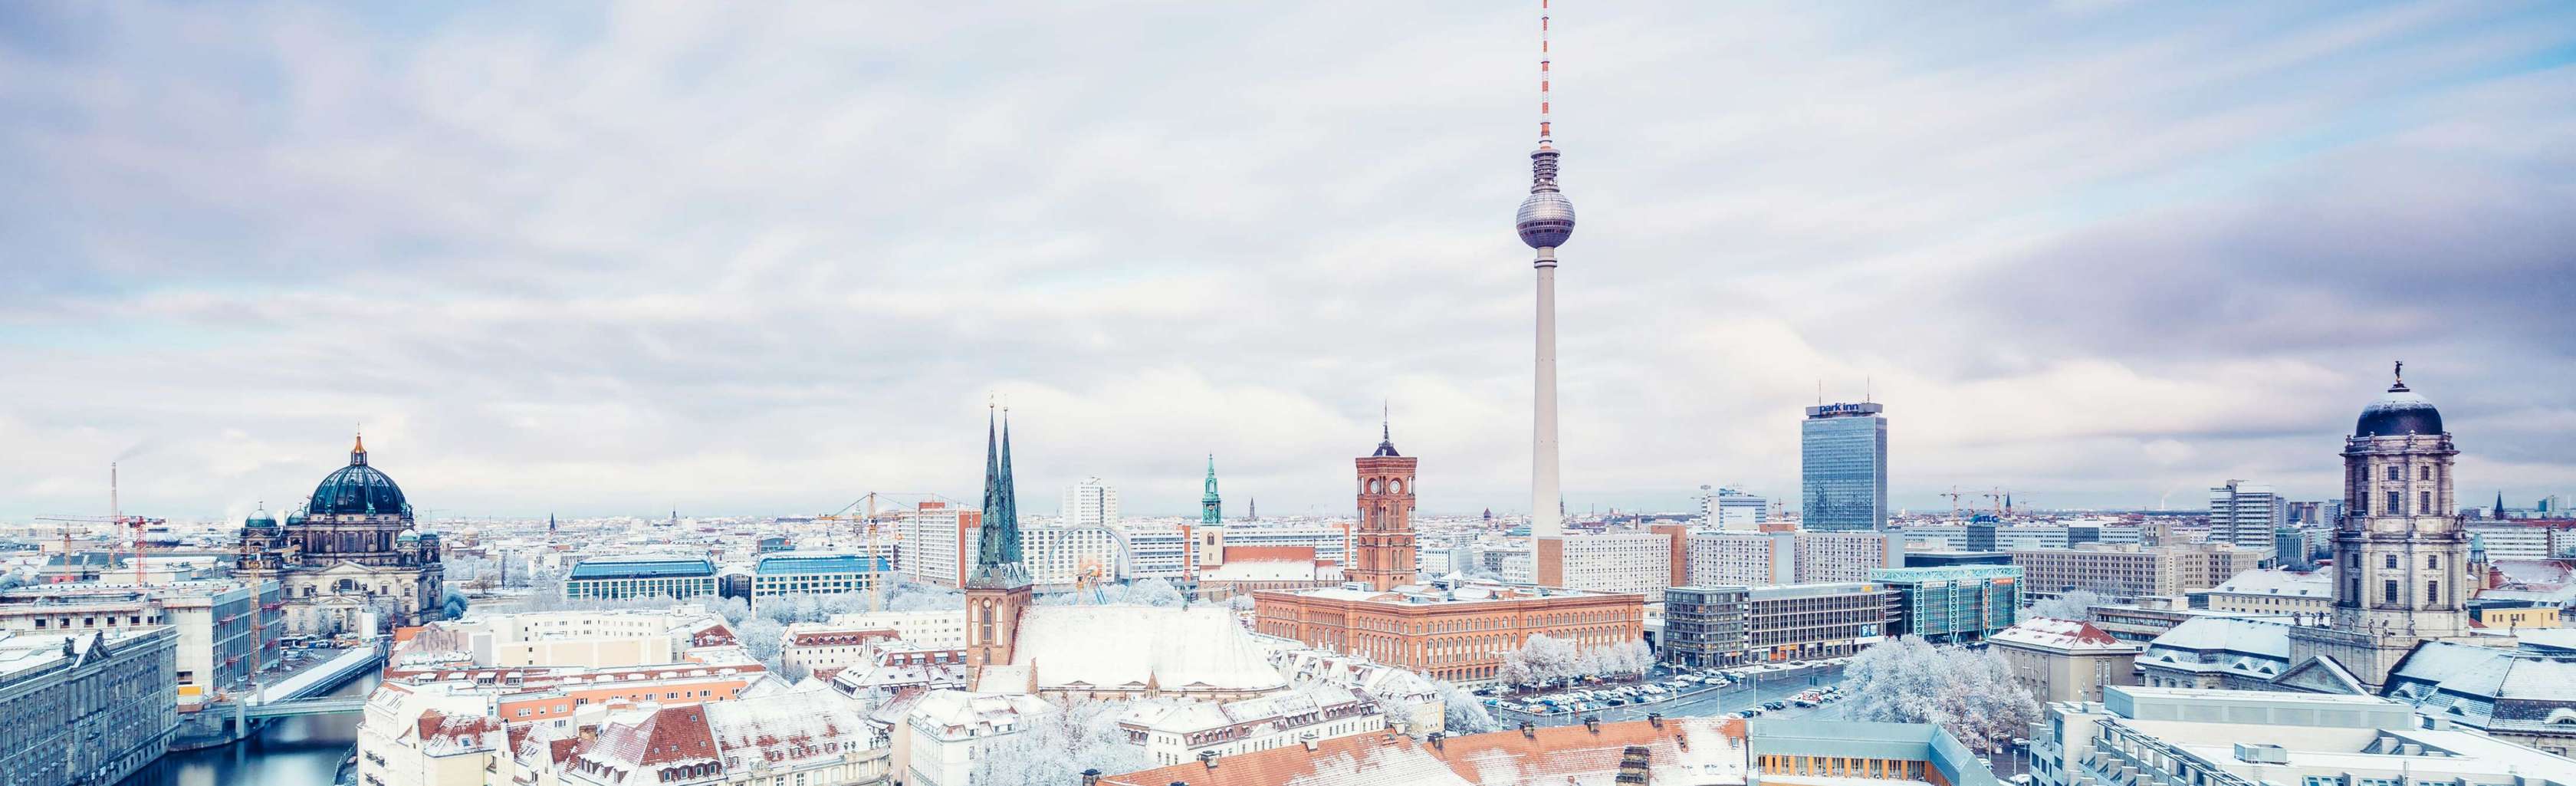 Versicherung in Berlin: Kontaktieren Sie unsere Experten und vereinbaren Sie einen persönlichen Beratungstermin in Berlin